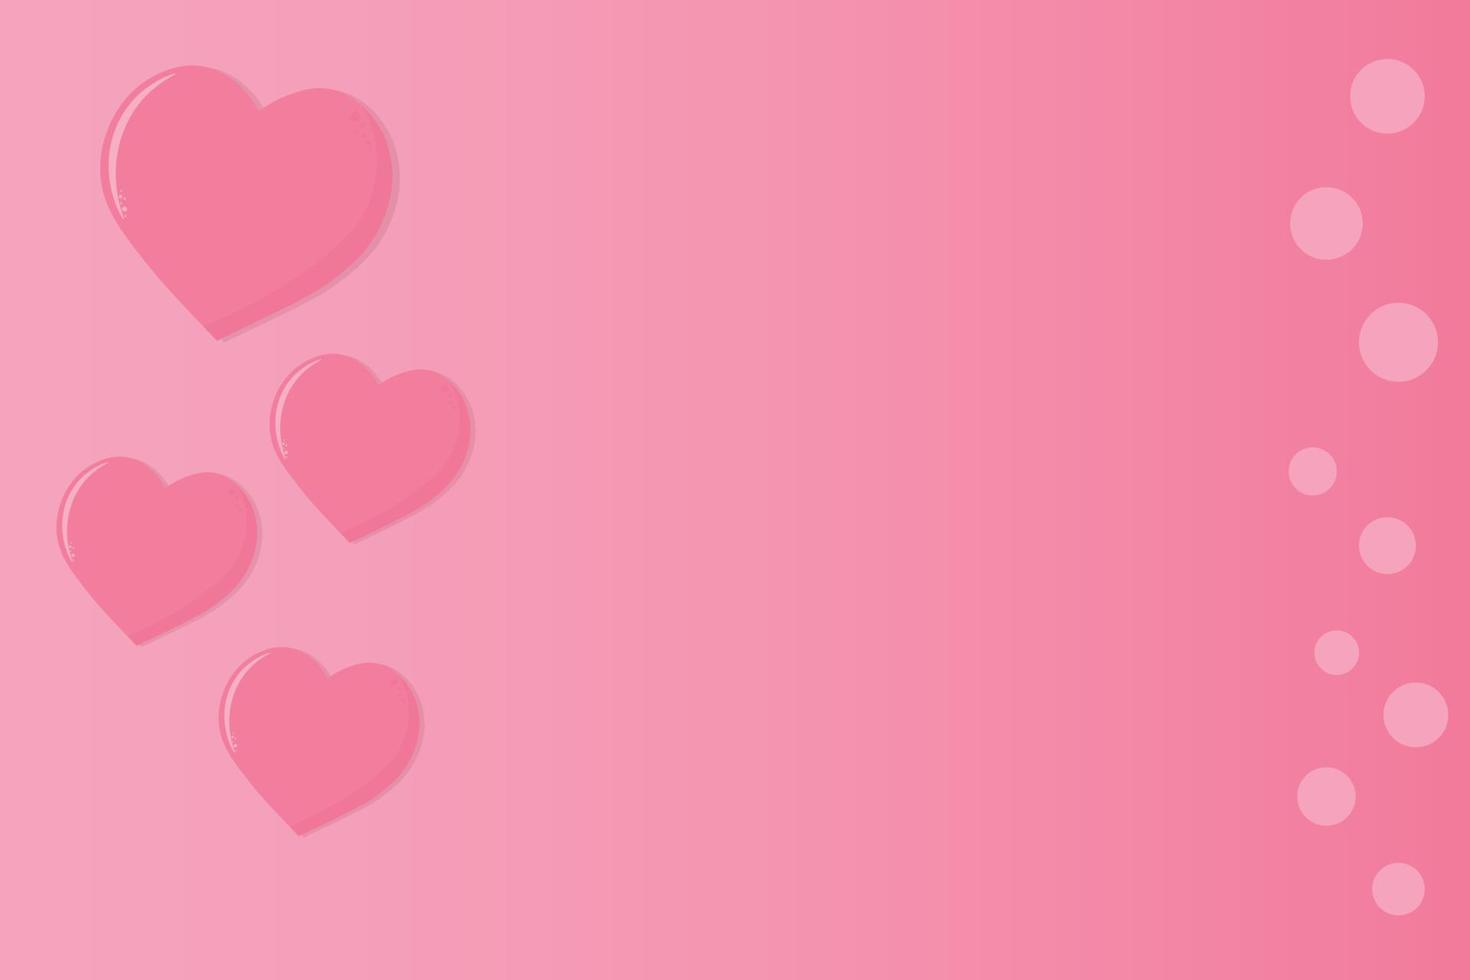 éléments de papier peint rose coloré en forme de coeur volant sur fond rose. concept d'amour et de saint valentin. conception de carte de voeux d'anniversaire. vecteur